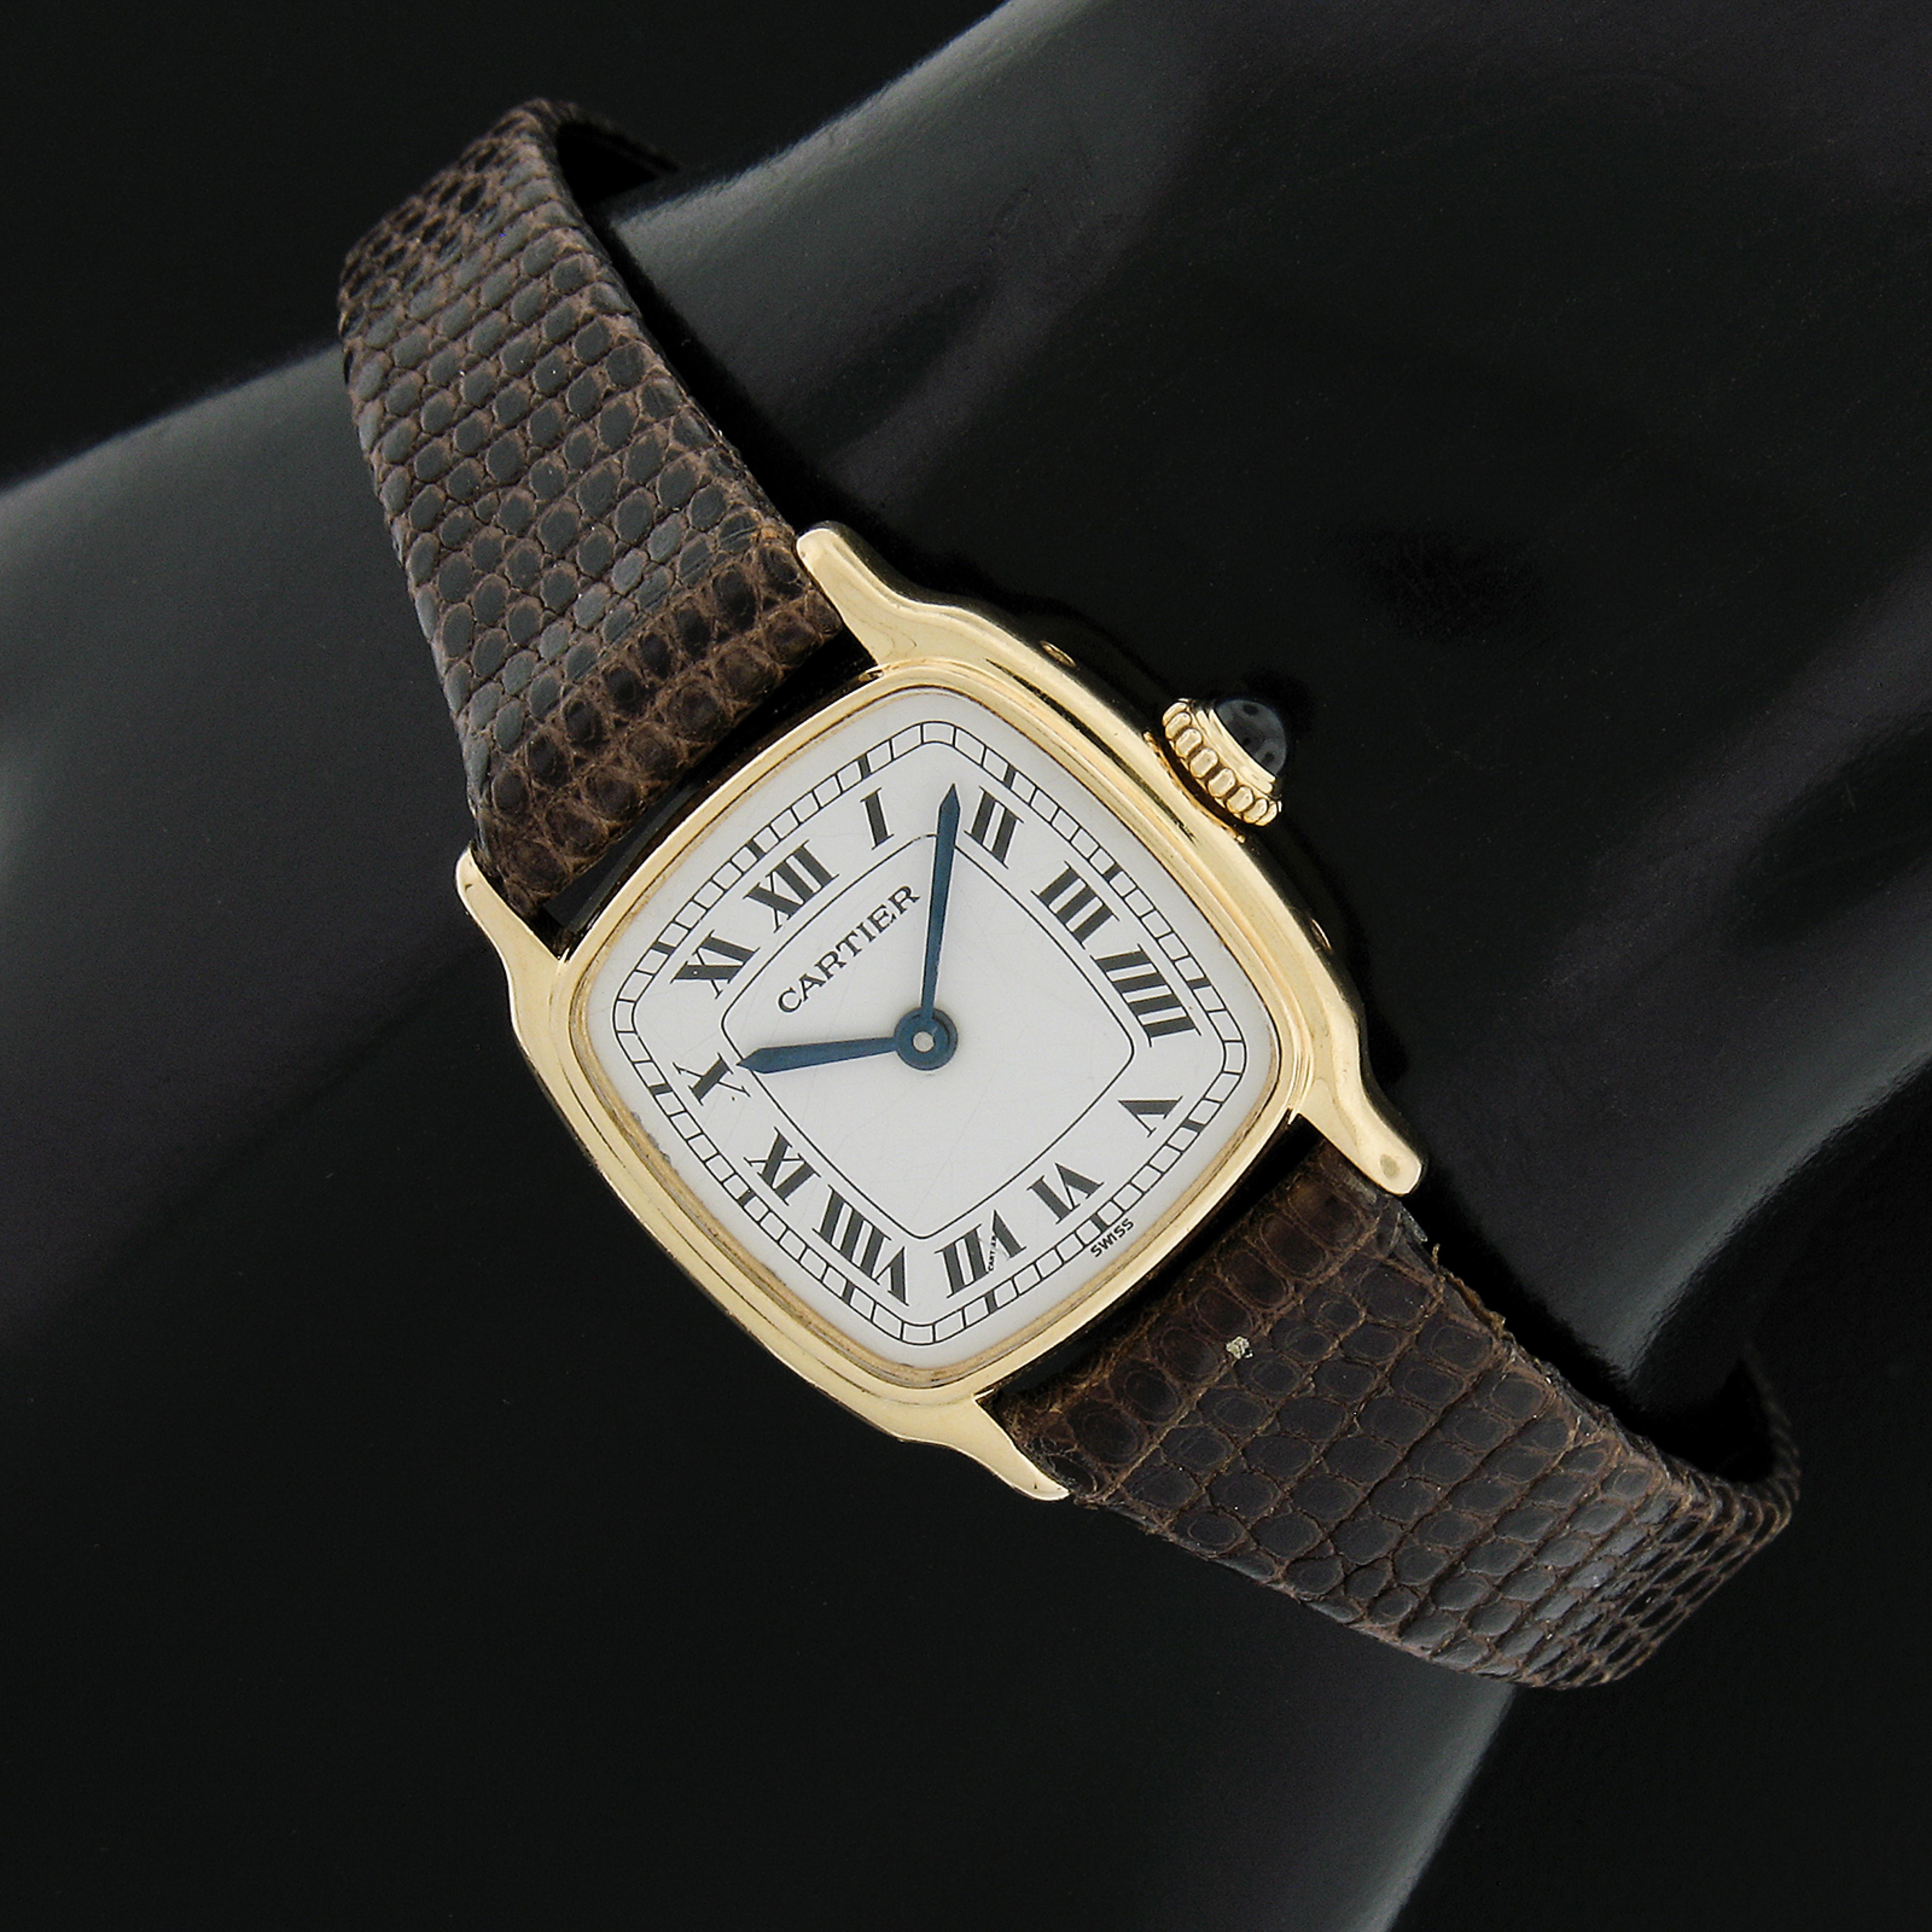 Cette magnifique montre-bracelet classique de Cartier est dotée d'un mouvement mécanique suisse à remontage manuel monté dans un élégant boîtier de forme coussin en or jaune 18 carats. La montre est livrée avec un bracelet en peau de lézard